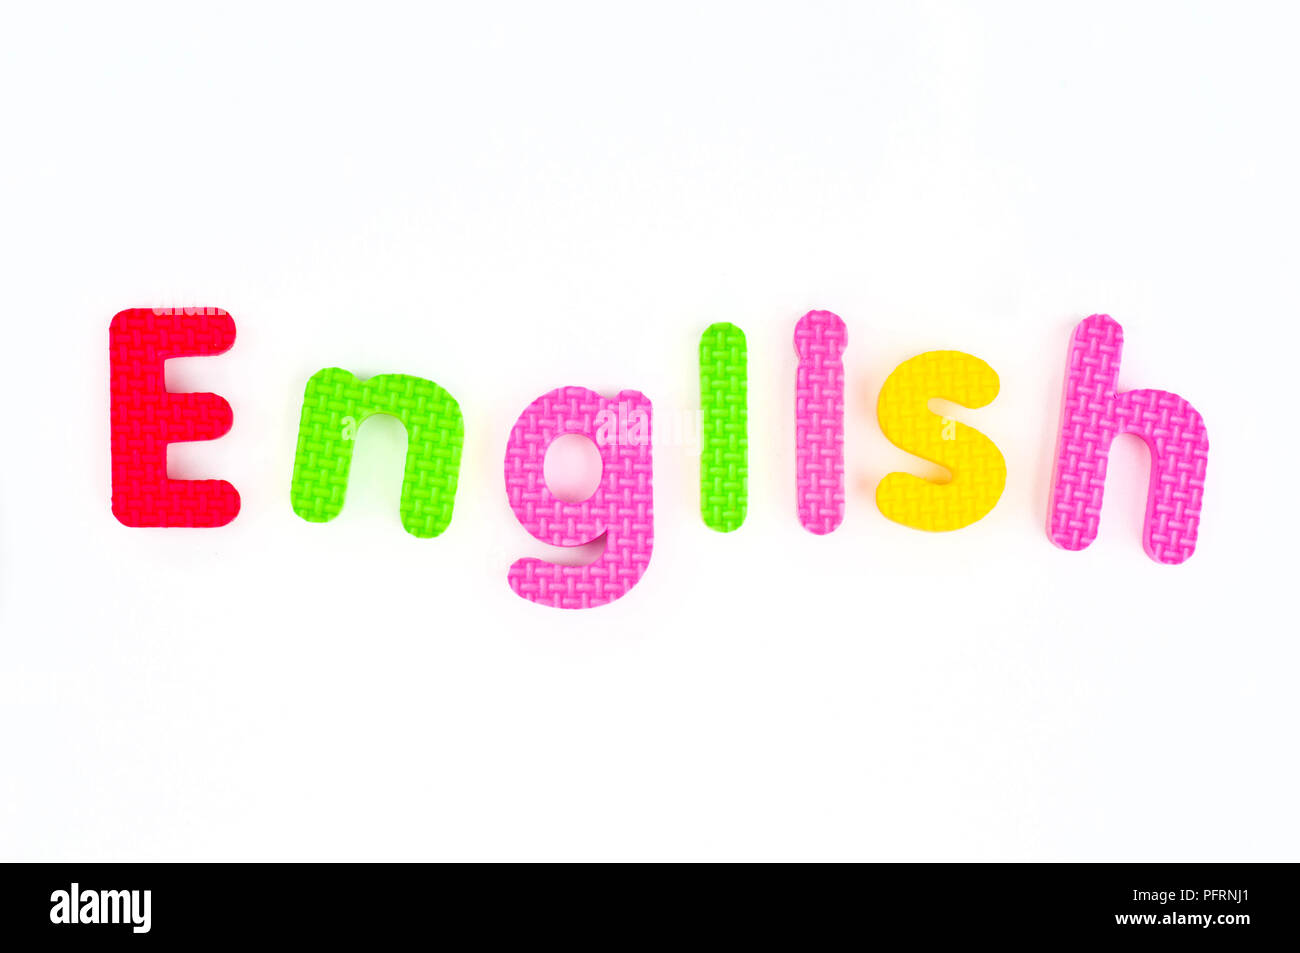 Bunte Schaumstoff Buchstaben angeordnet das Wort "Englisch" zu bilden Stockfoto